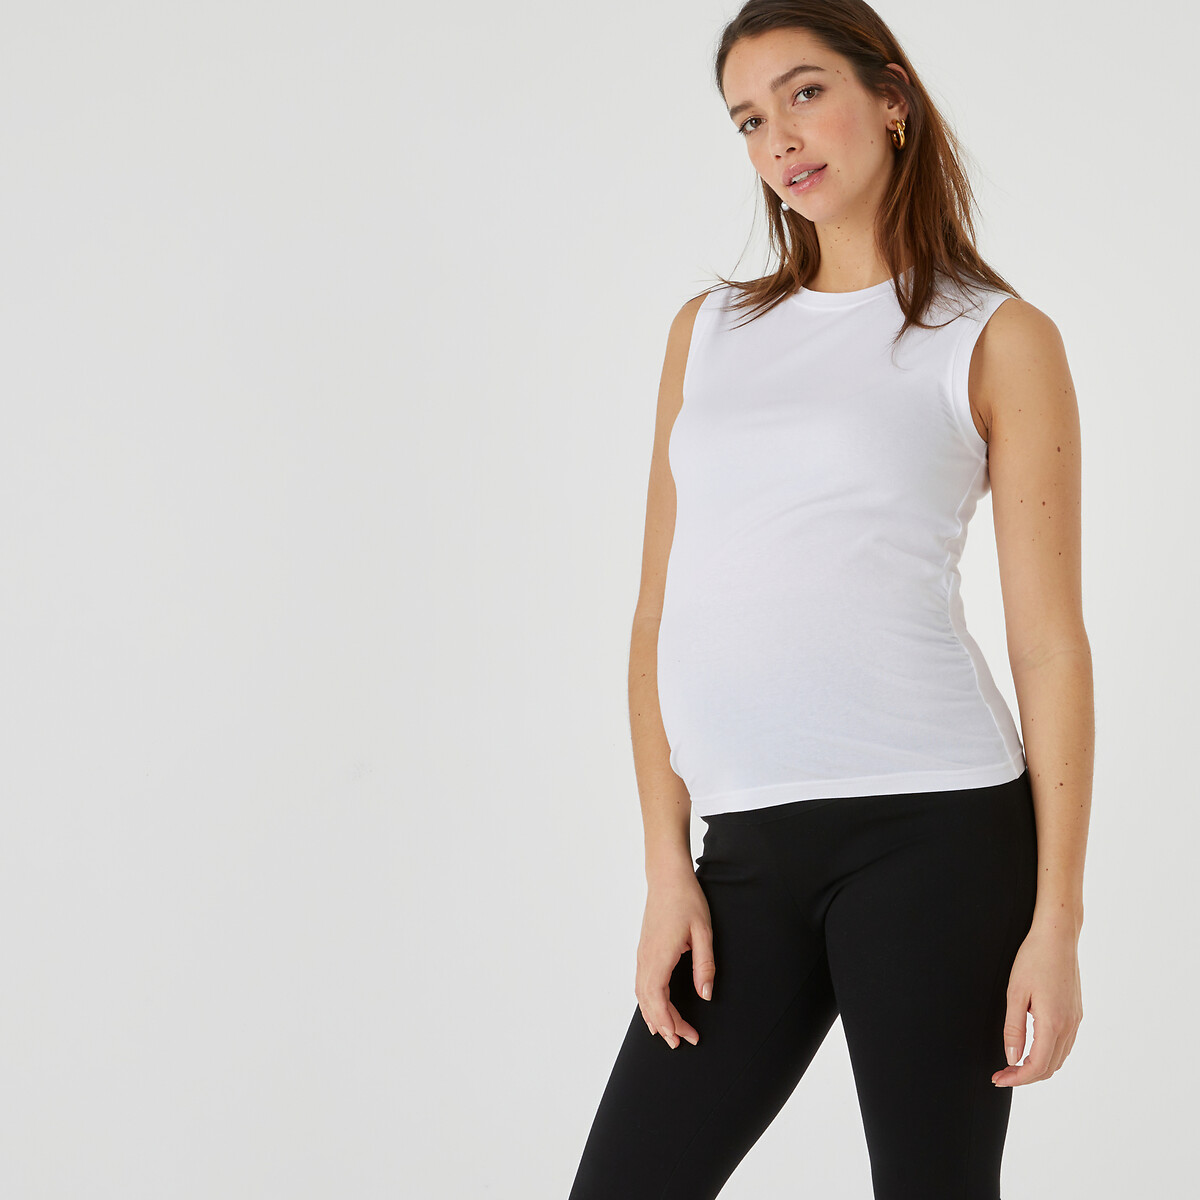 Cache Cœur - Bio Blanc - Vêtements de yoga Femme - Coton Bio